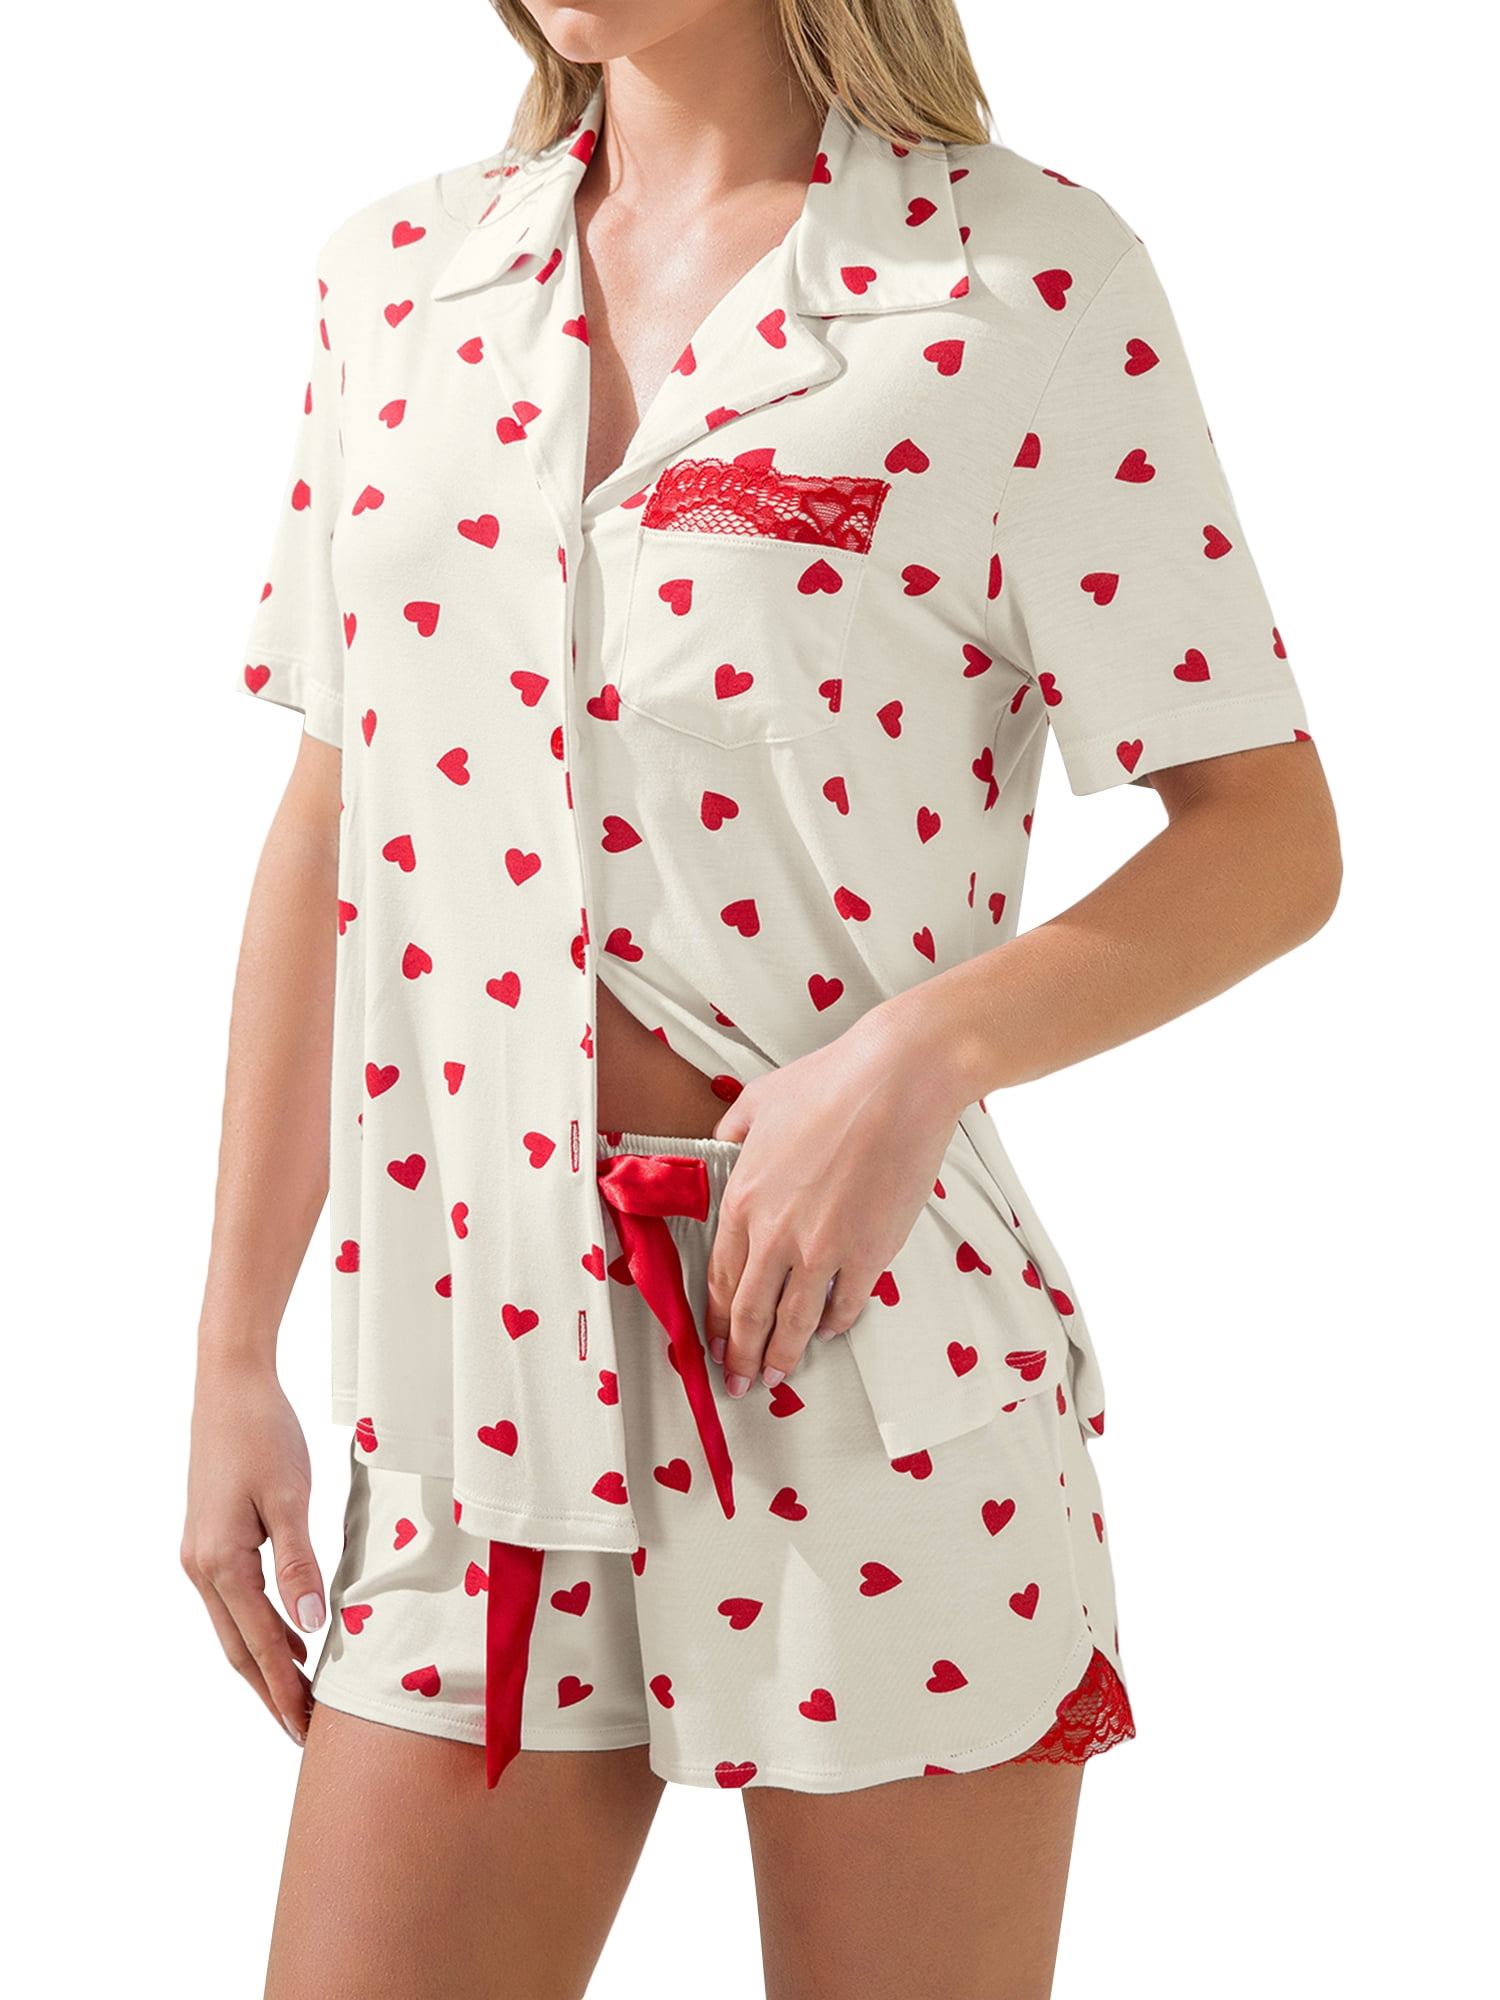 Hello Kitty Pyjamas / Lounge Wear / Sleepwear (2-7yrs) in Isolo